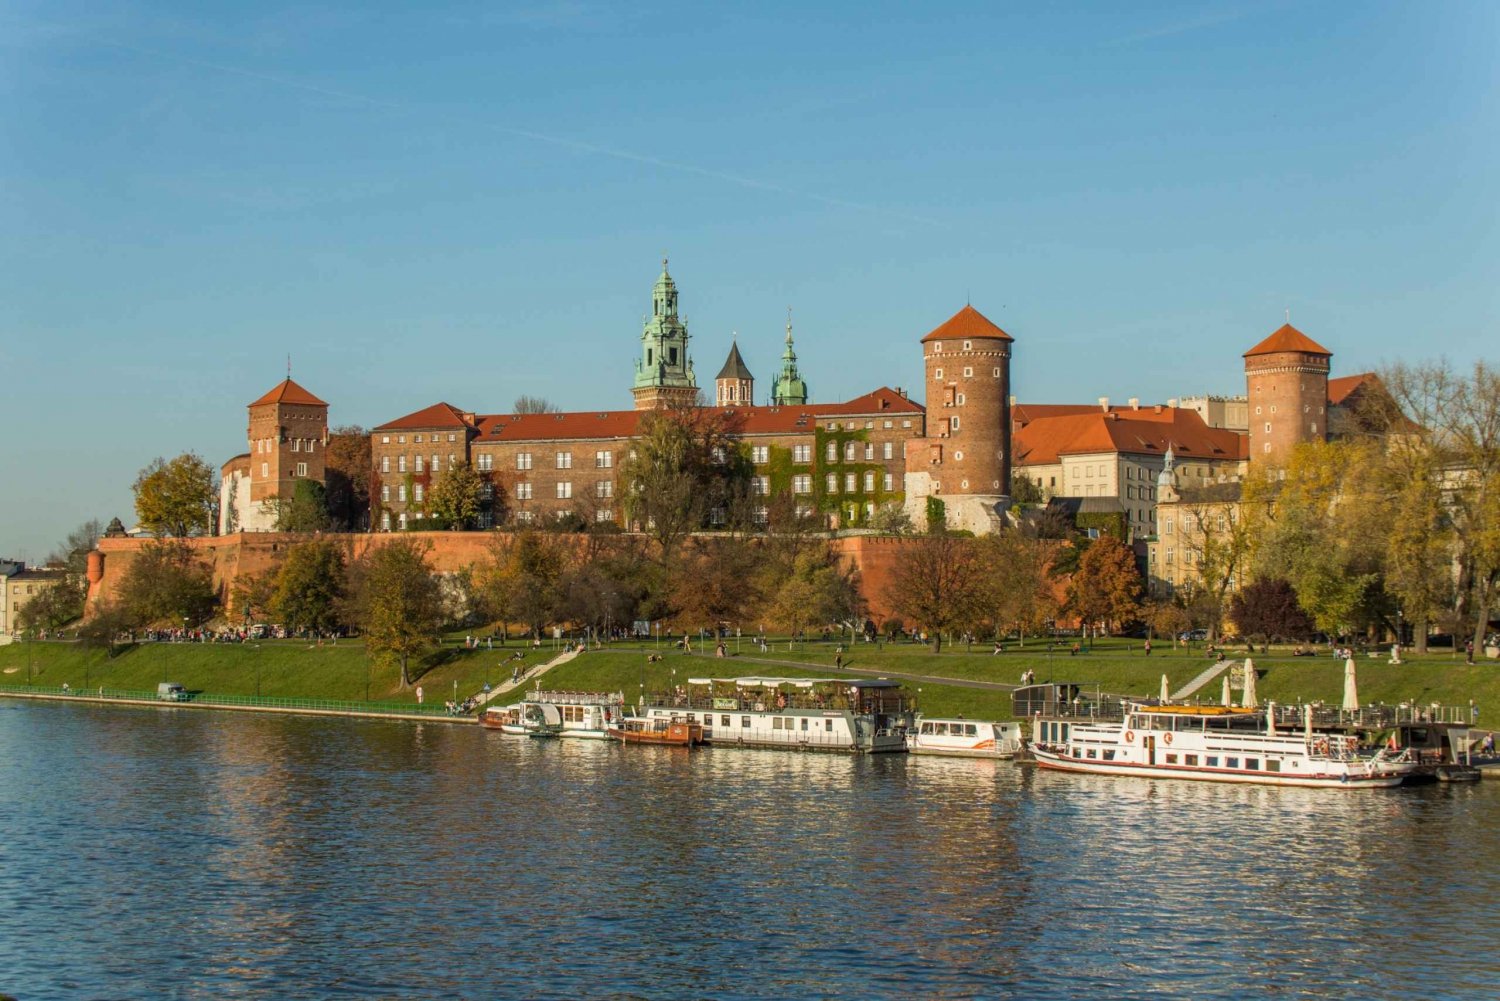 Krakau: Wawel-kasteel, kathedraal en Rynek-tour met lunch